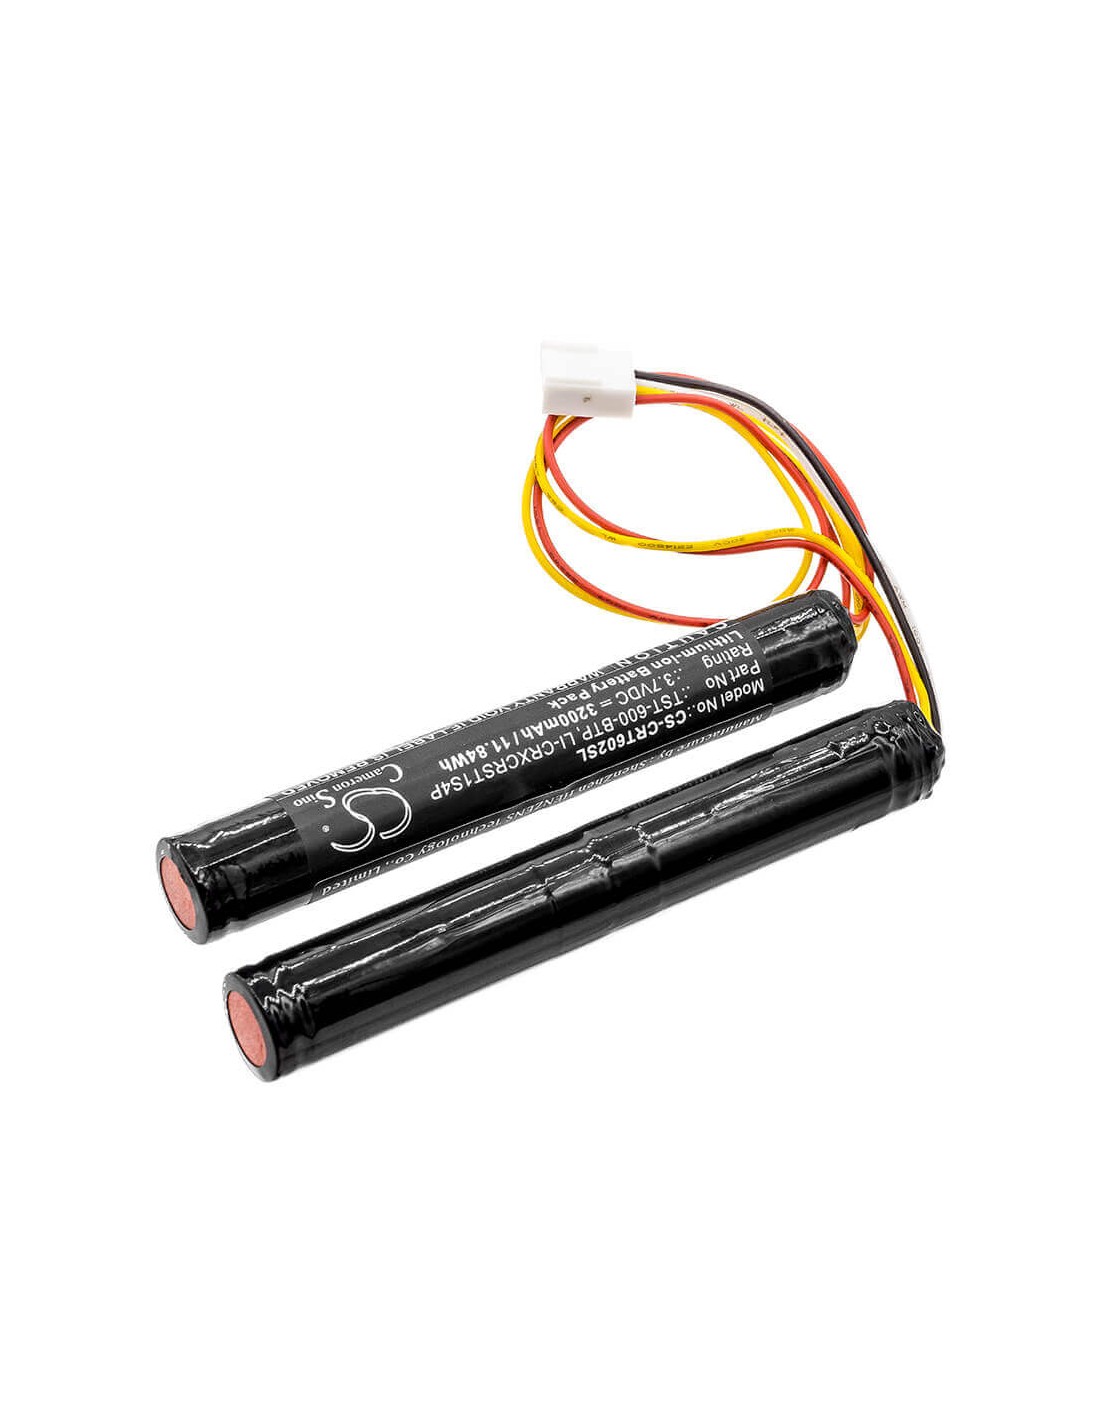 Battery for Crestron, Tst-600, Tst-600 Touchpanels 3.7V, 3200mAh - 11.84Wh